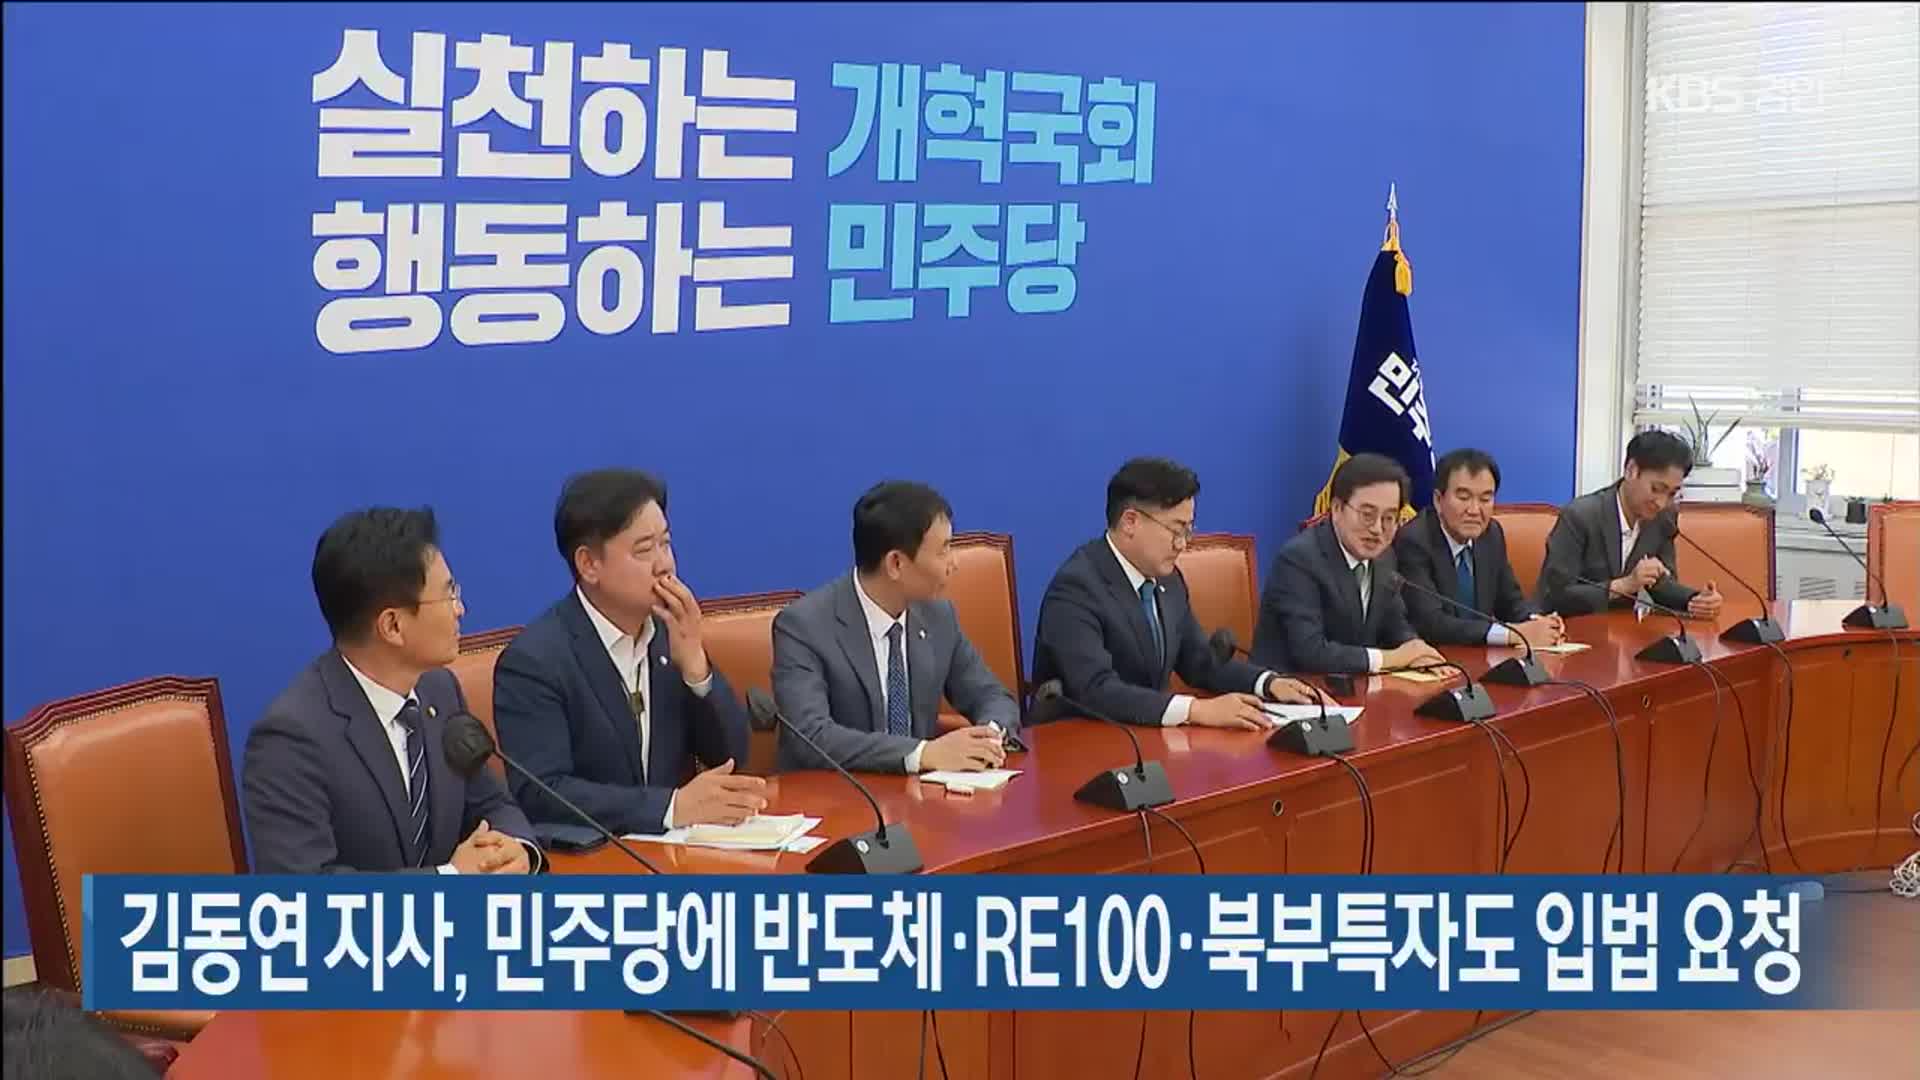 김동연 지사, 민주당에 반도체·RE100·북부특자도 입법 요청